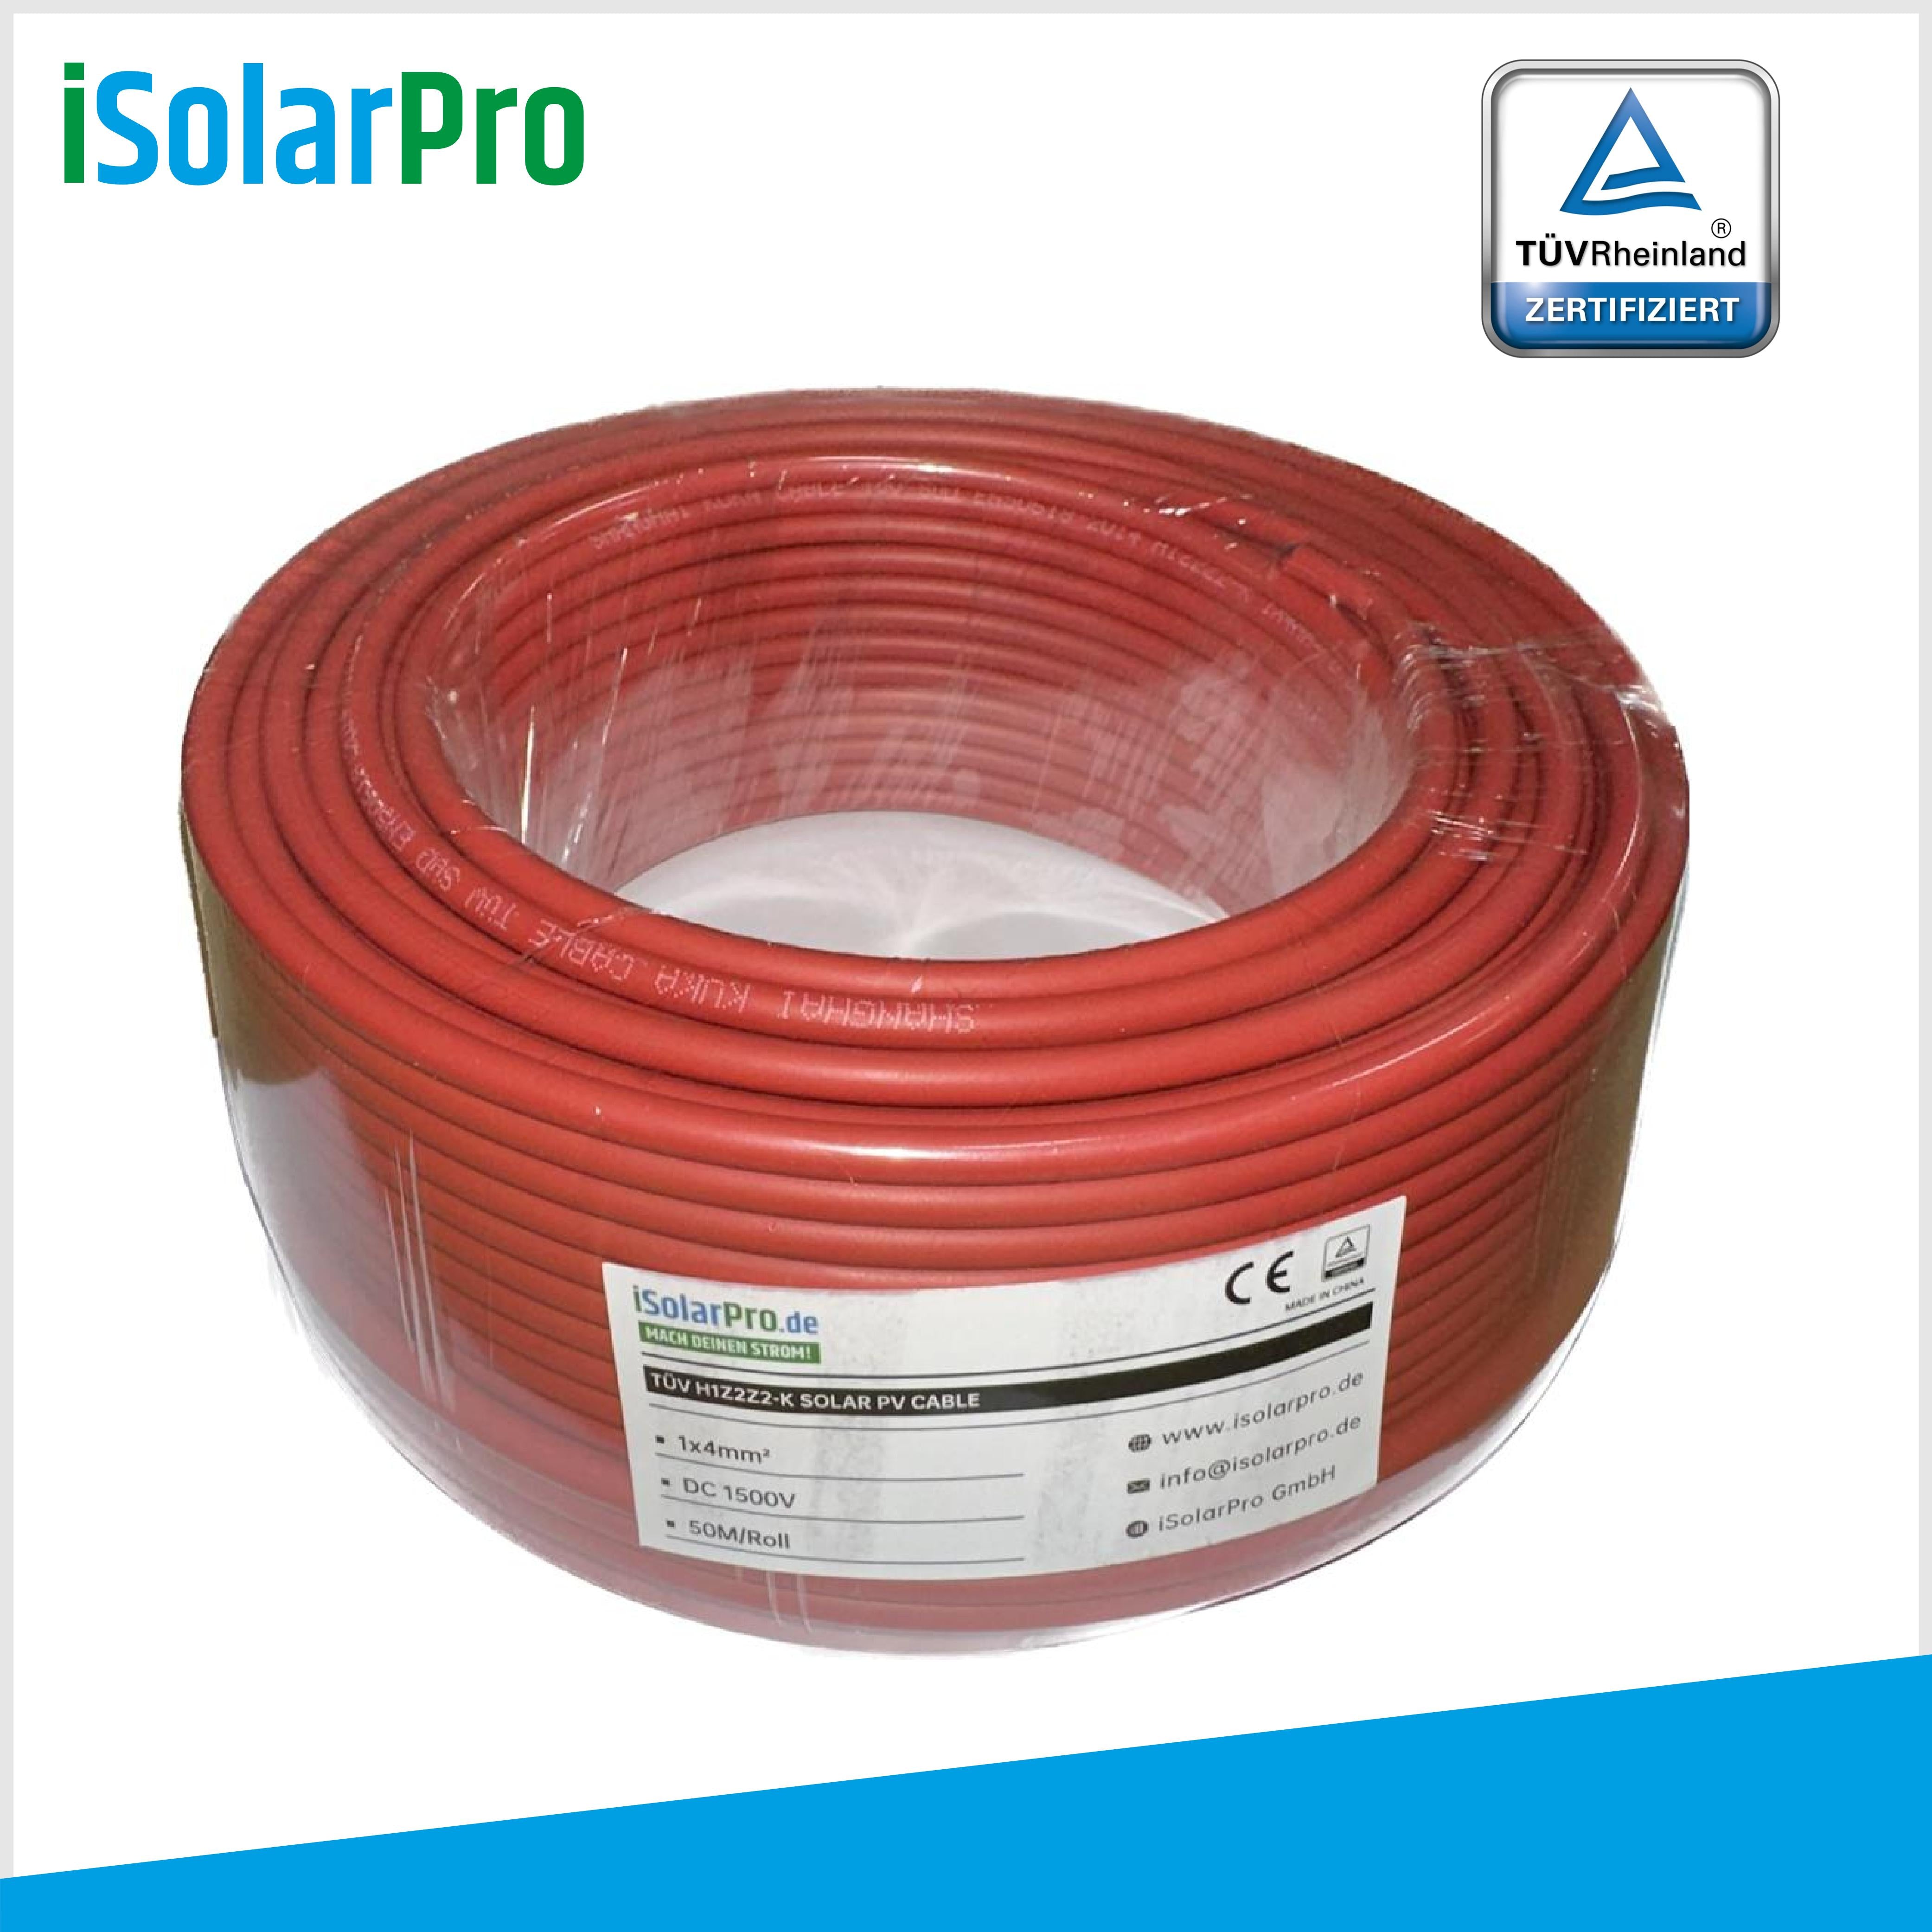 50m Solarkabel 4 mm² Photovoltaik Kabel für PV Anlagen rot